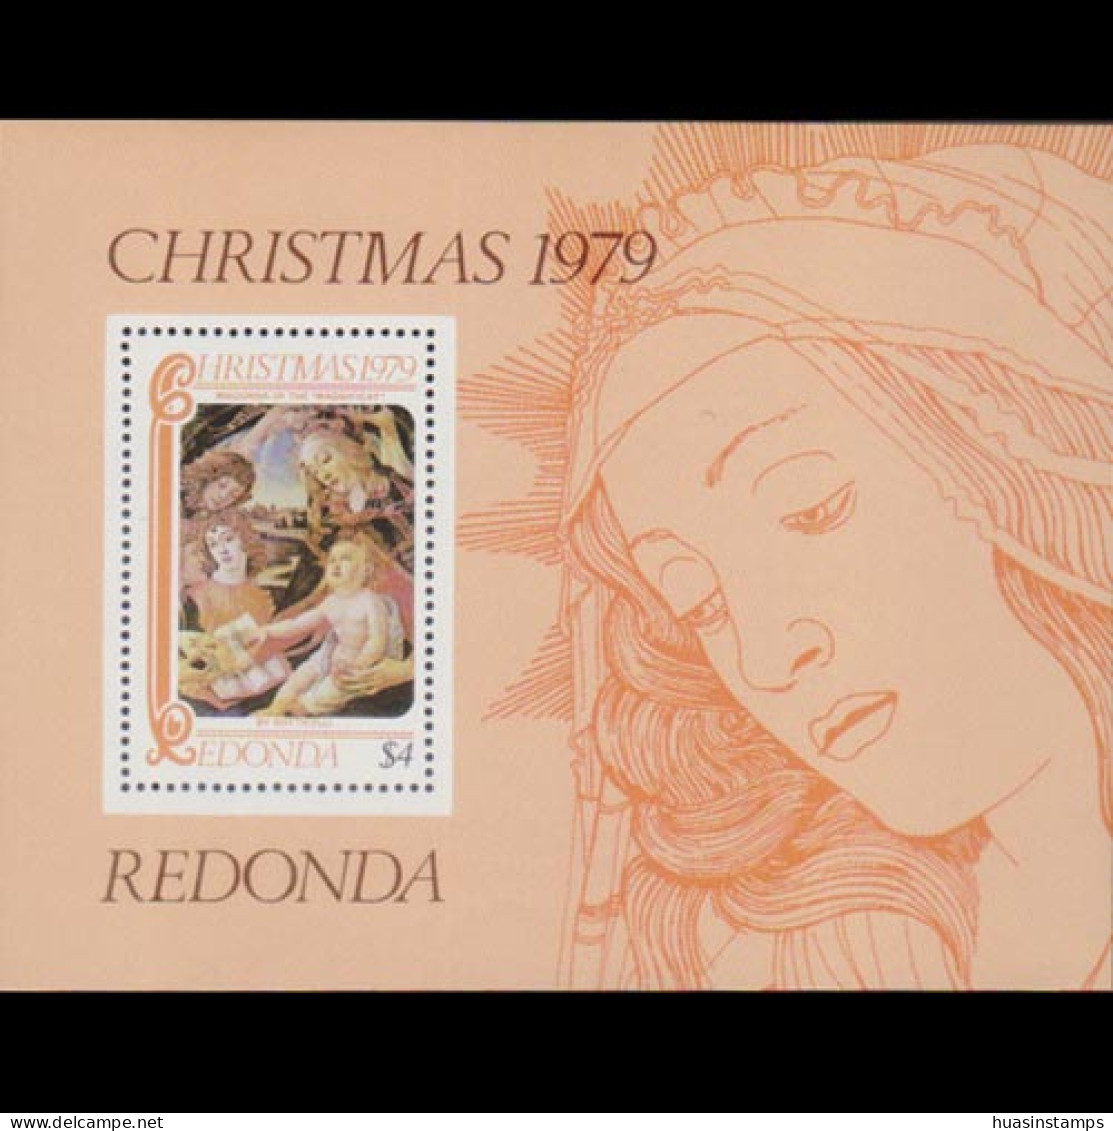 REDONDA 1979 - Christmas MNH - Antigua And Barbuda (1981-...)